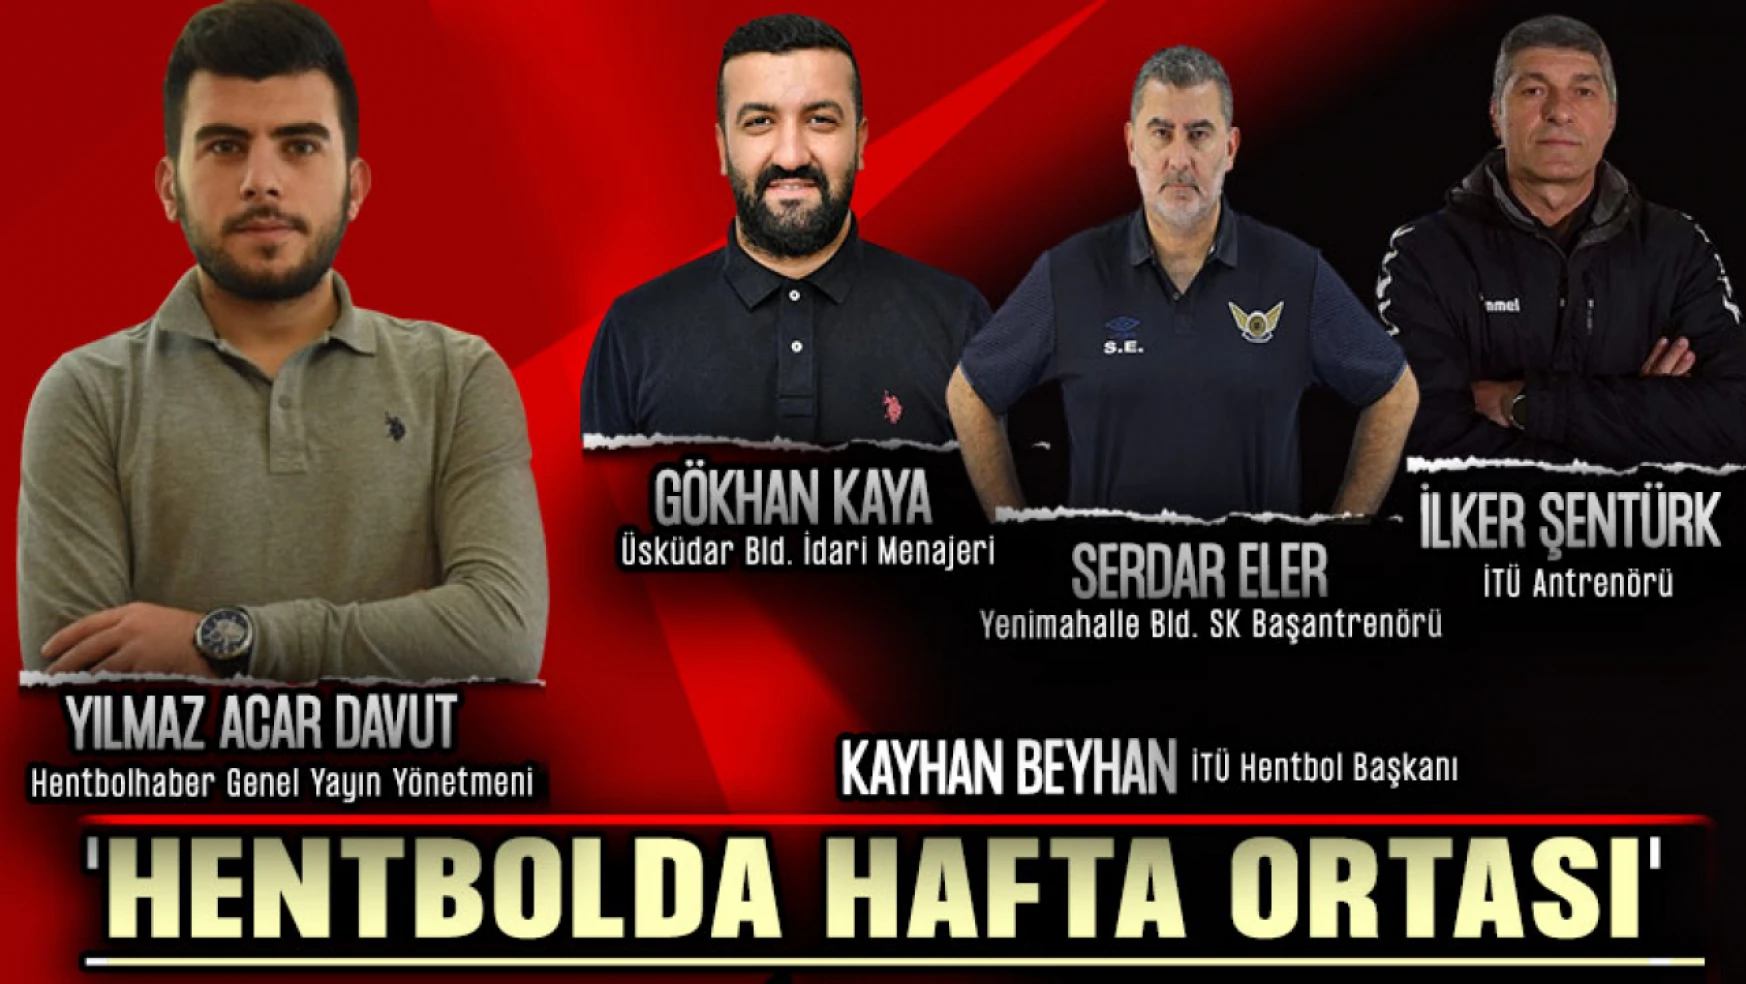 Hentbolda Hafta Ortası'nda Özel Konuklar: Gökhan Kaya, Serdar Eler, Kayhan Beyhan ve İlker Şentürk...